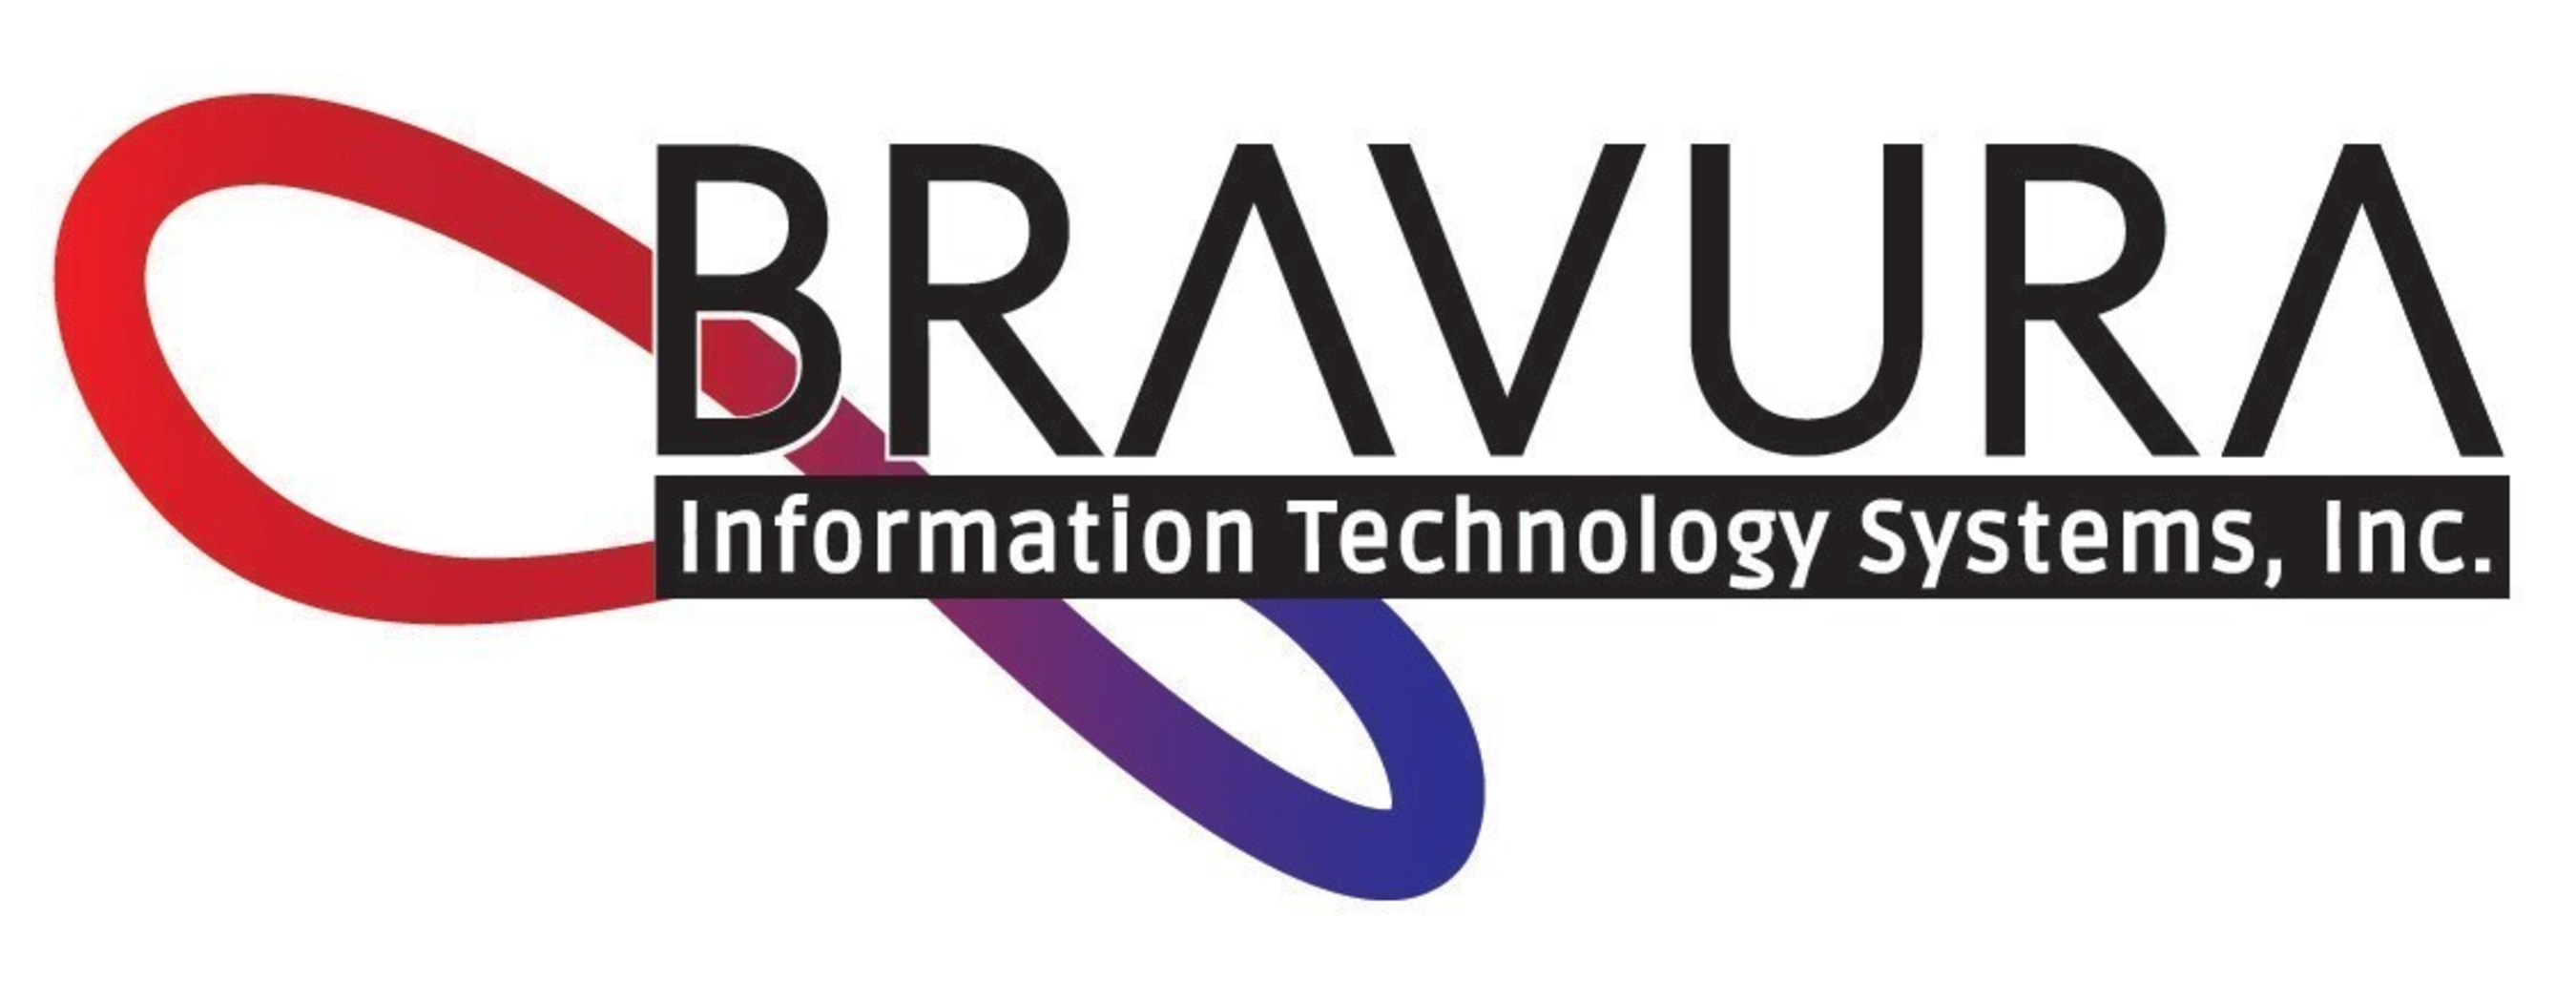 Bravura Information Technology Systems, Inc.